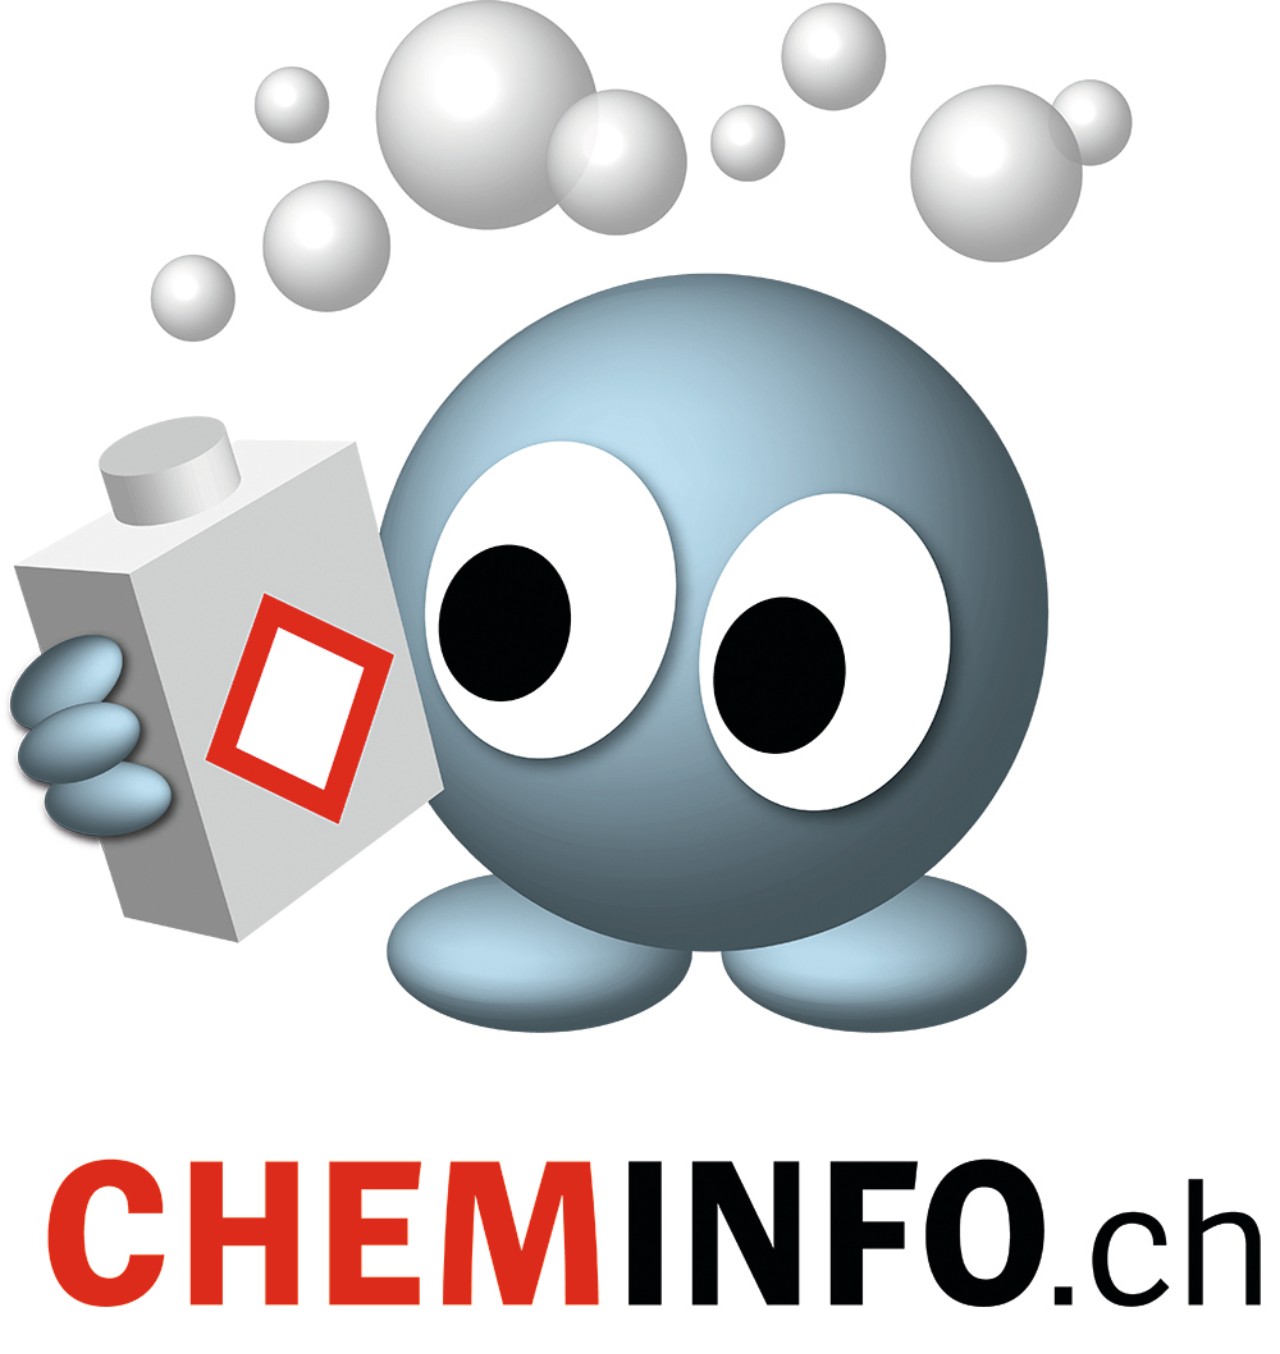 Logo von Cheminfo, der Informationskampagne der Schweizerischen Eidgenossenschaft zu den Gefahrensymbolen.